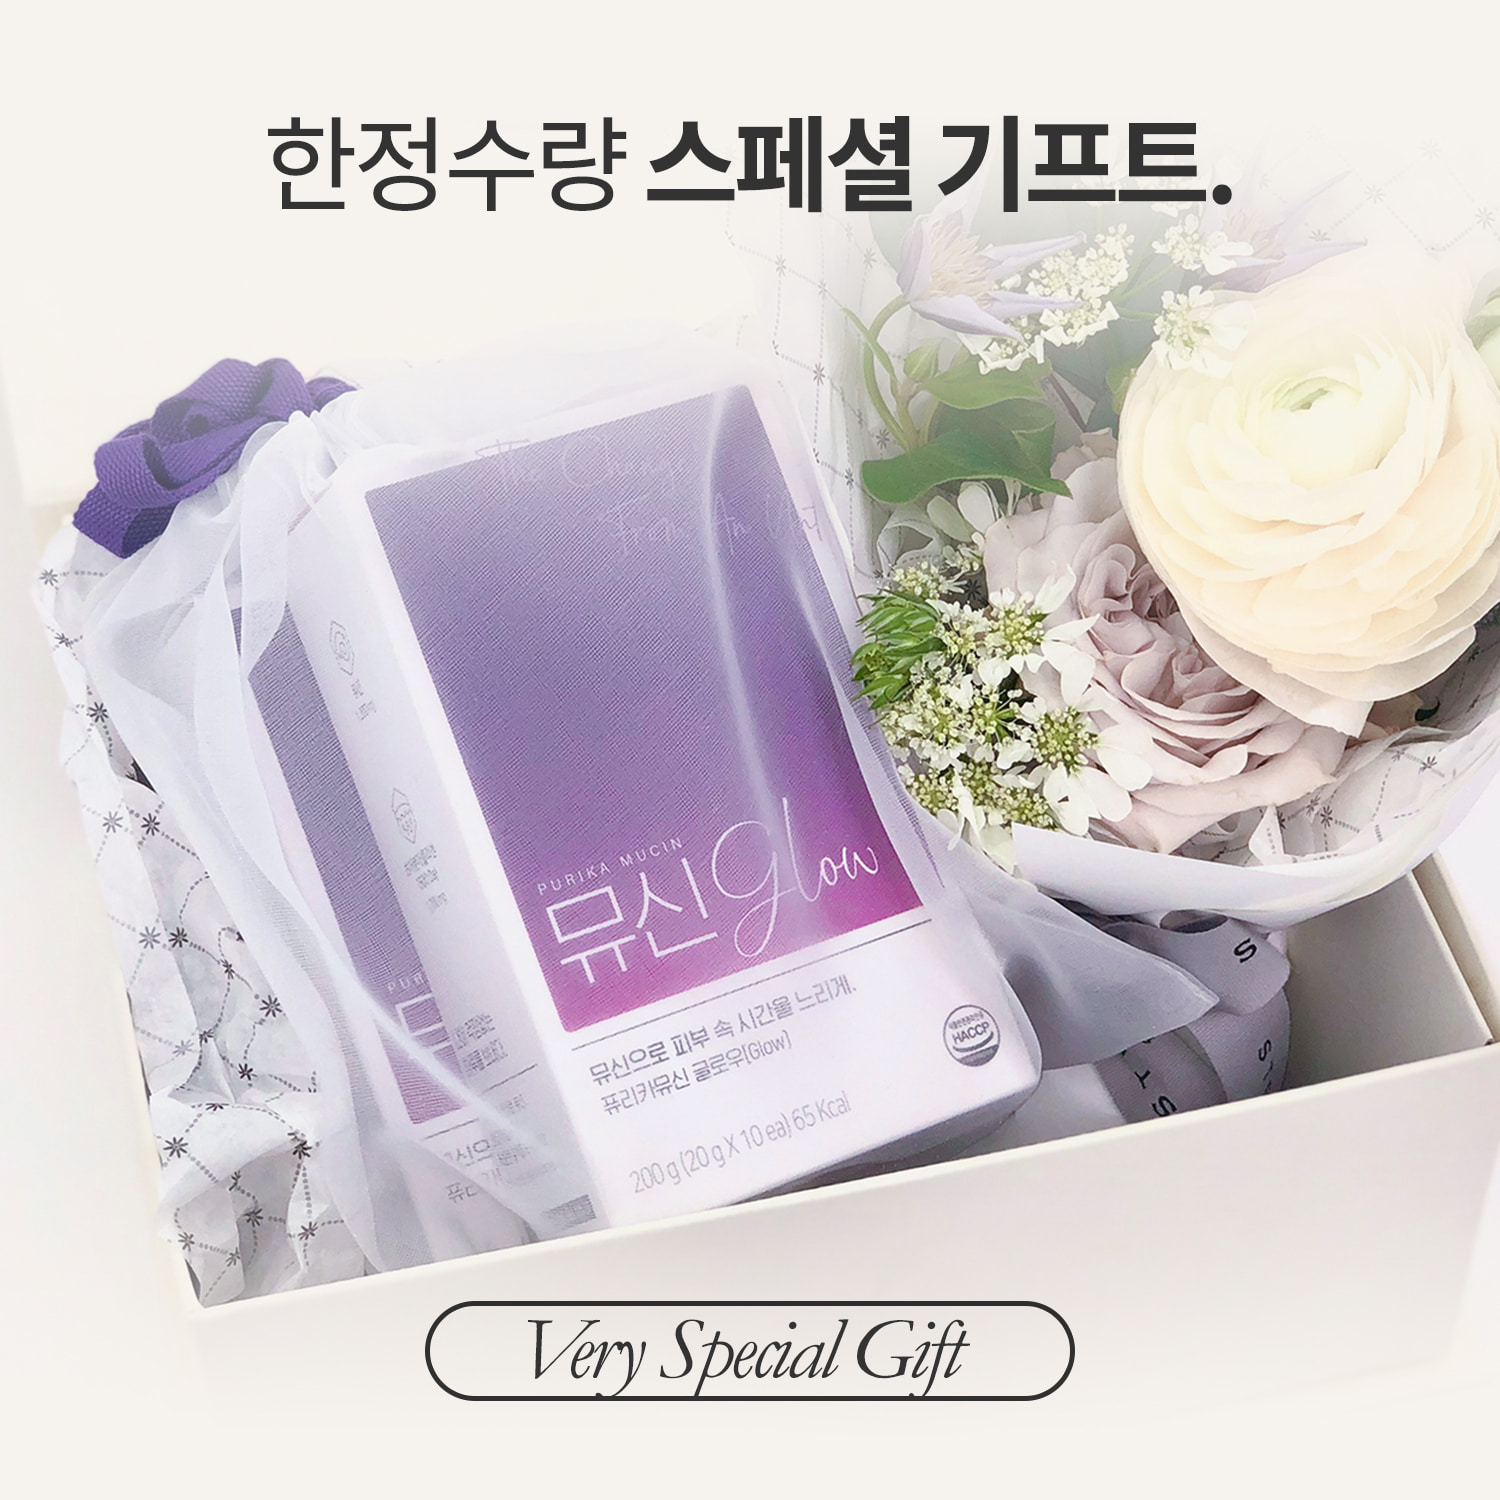 뮤신Glow 선물세트 (2box, 20포 + 프리미엄 미니부케)